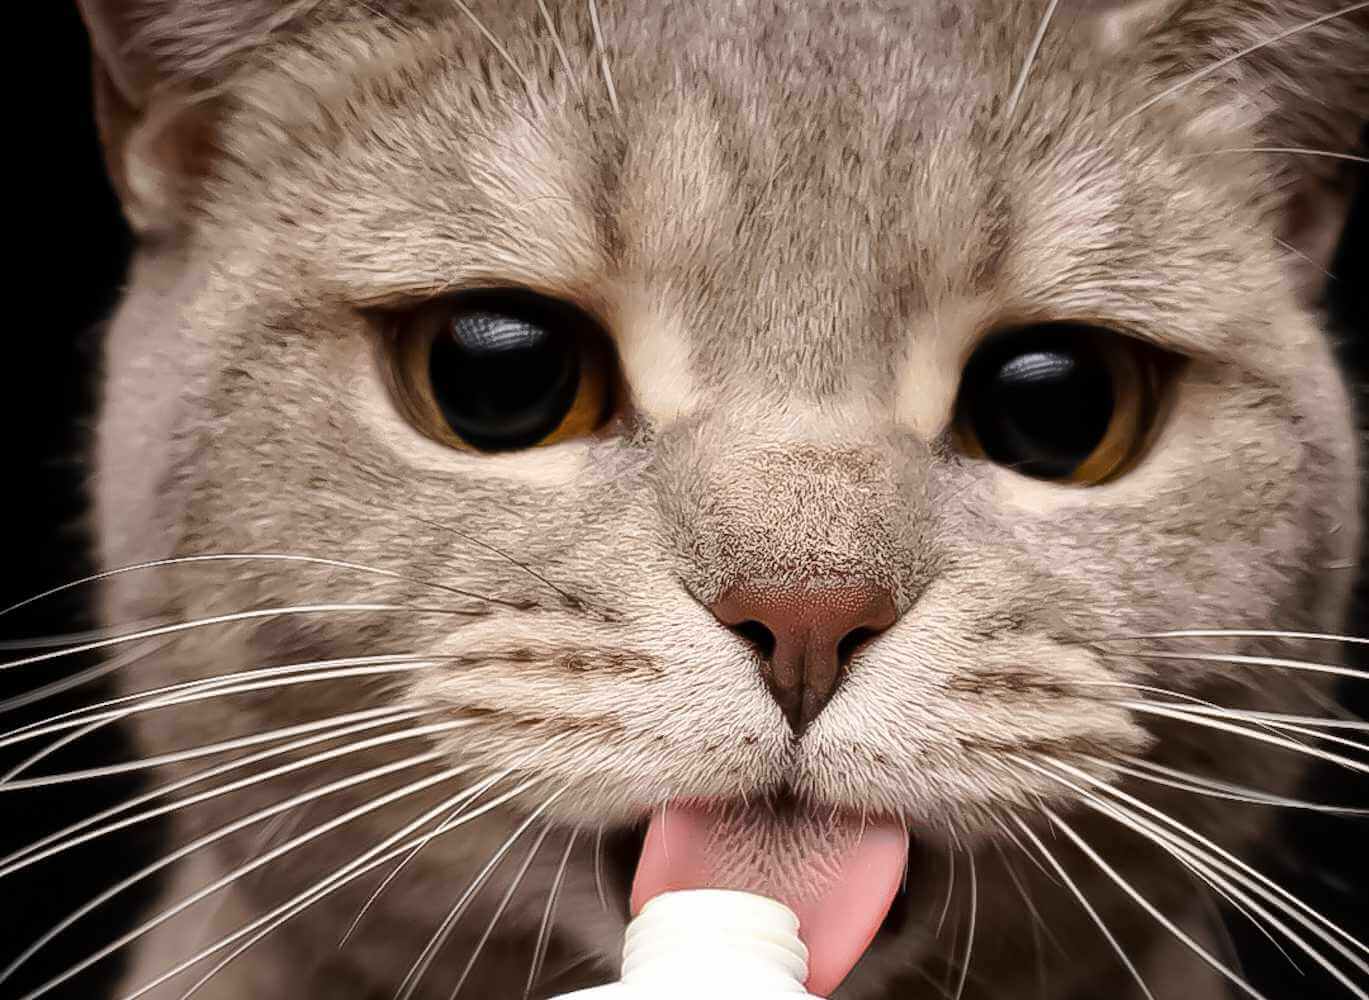 Nahaufnahme einer Katze, die an einer Schleckpaste leckt.